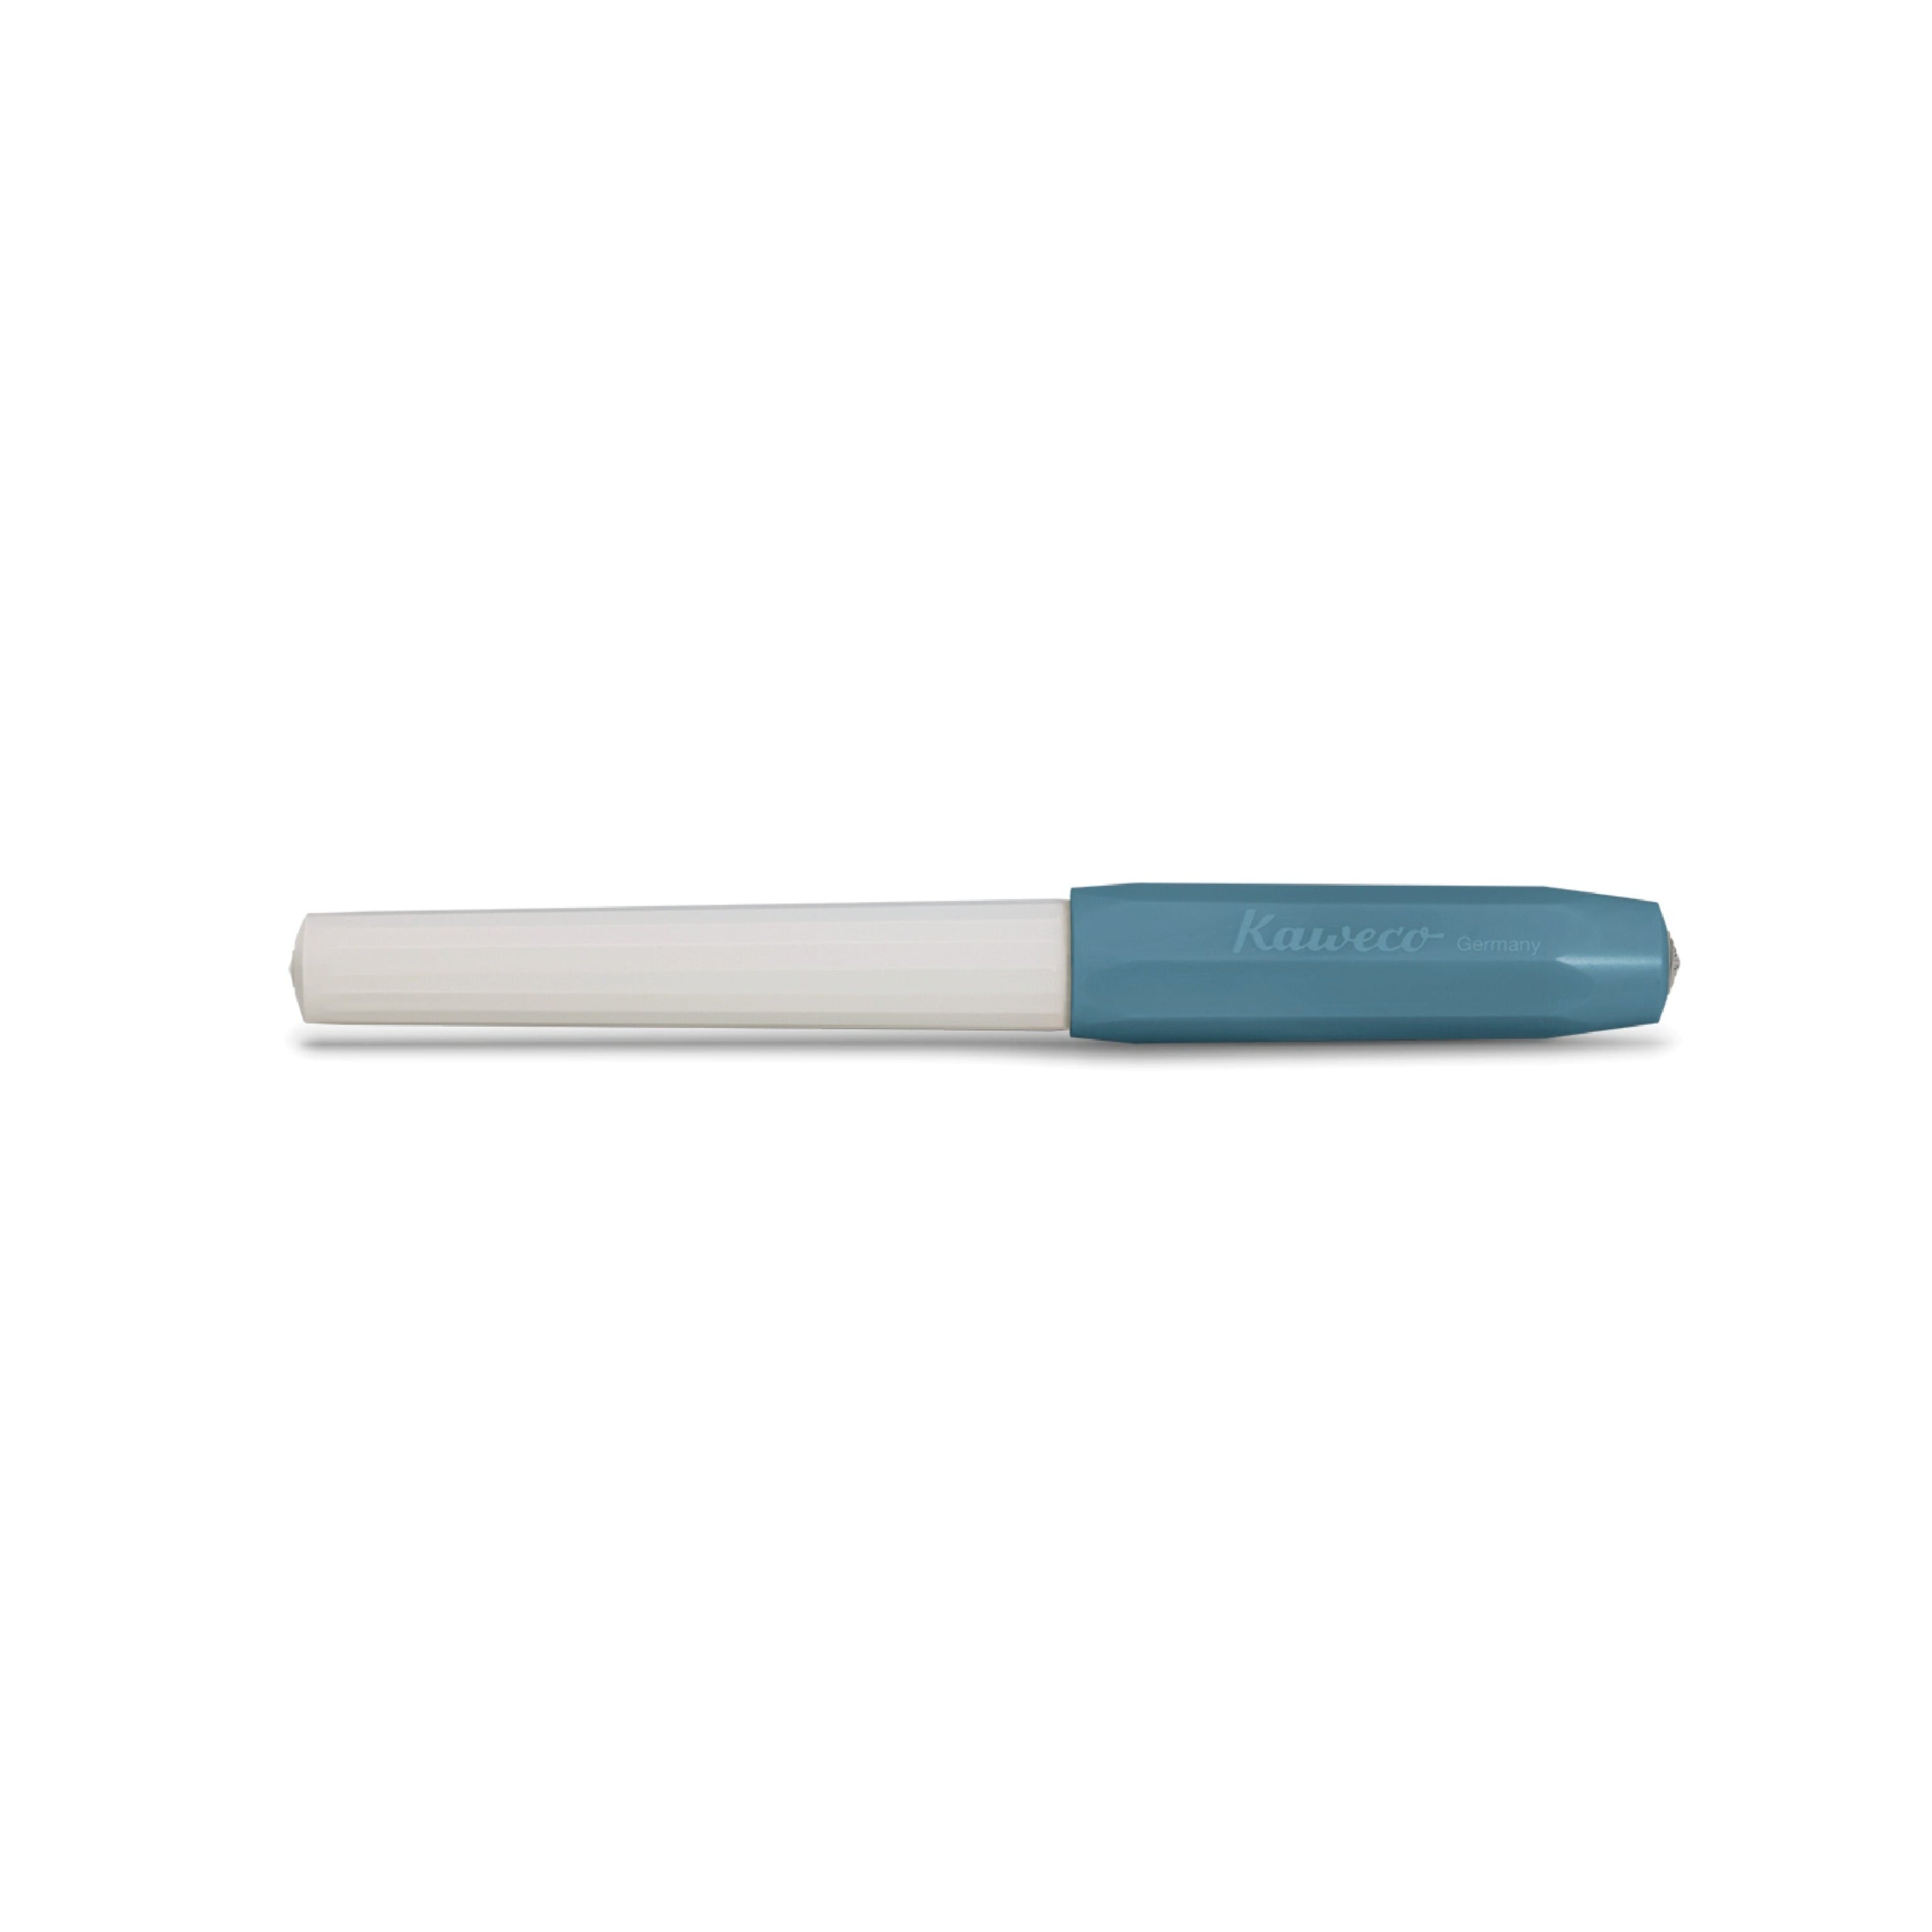 KA PKRO CAN | Roller Ball Cotton Candy | Kaweco | white and blue Roller Ball Pen | OCTÀGON DESIGN